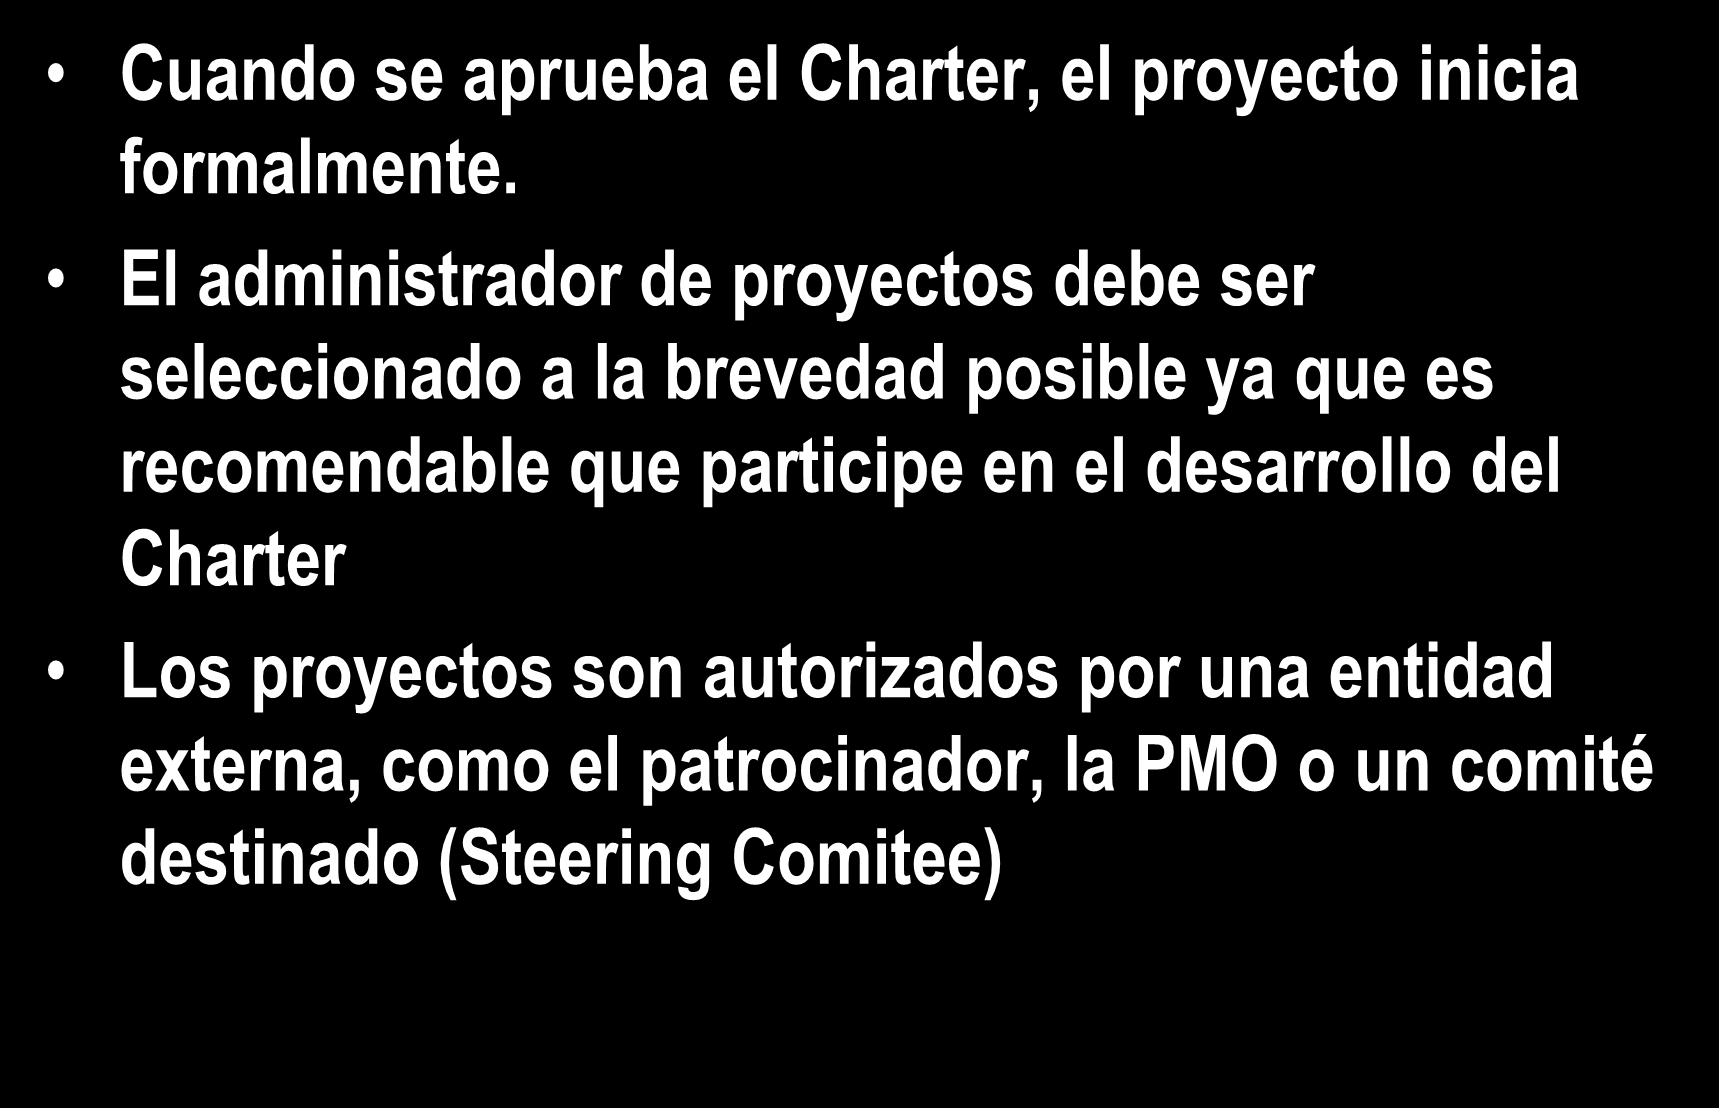 4.1 Develop Project Charter Cuando se aprueba el Charter, el proyecto inicia formalmente.